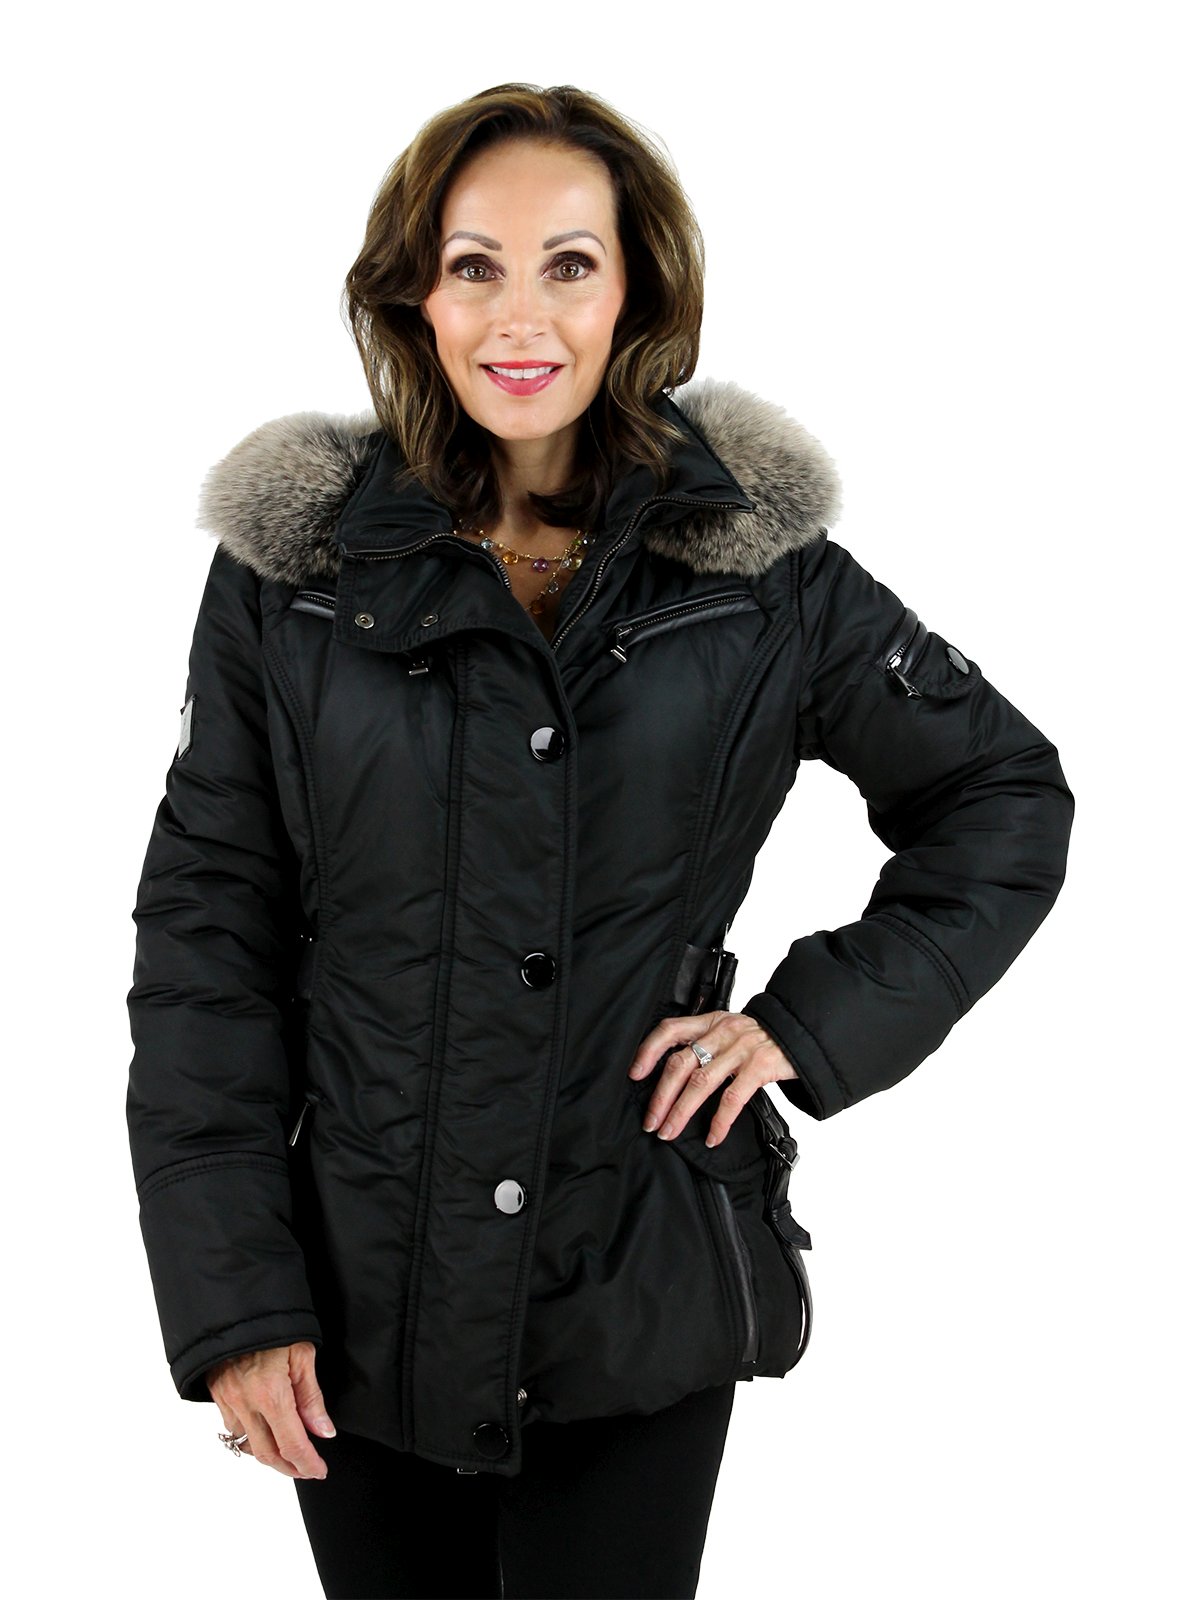 Apres Ski Jacket - Women's Small - Nero | Estate Furs